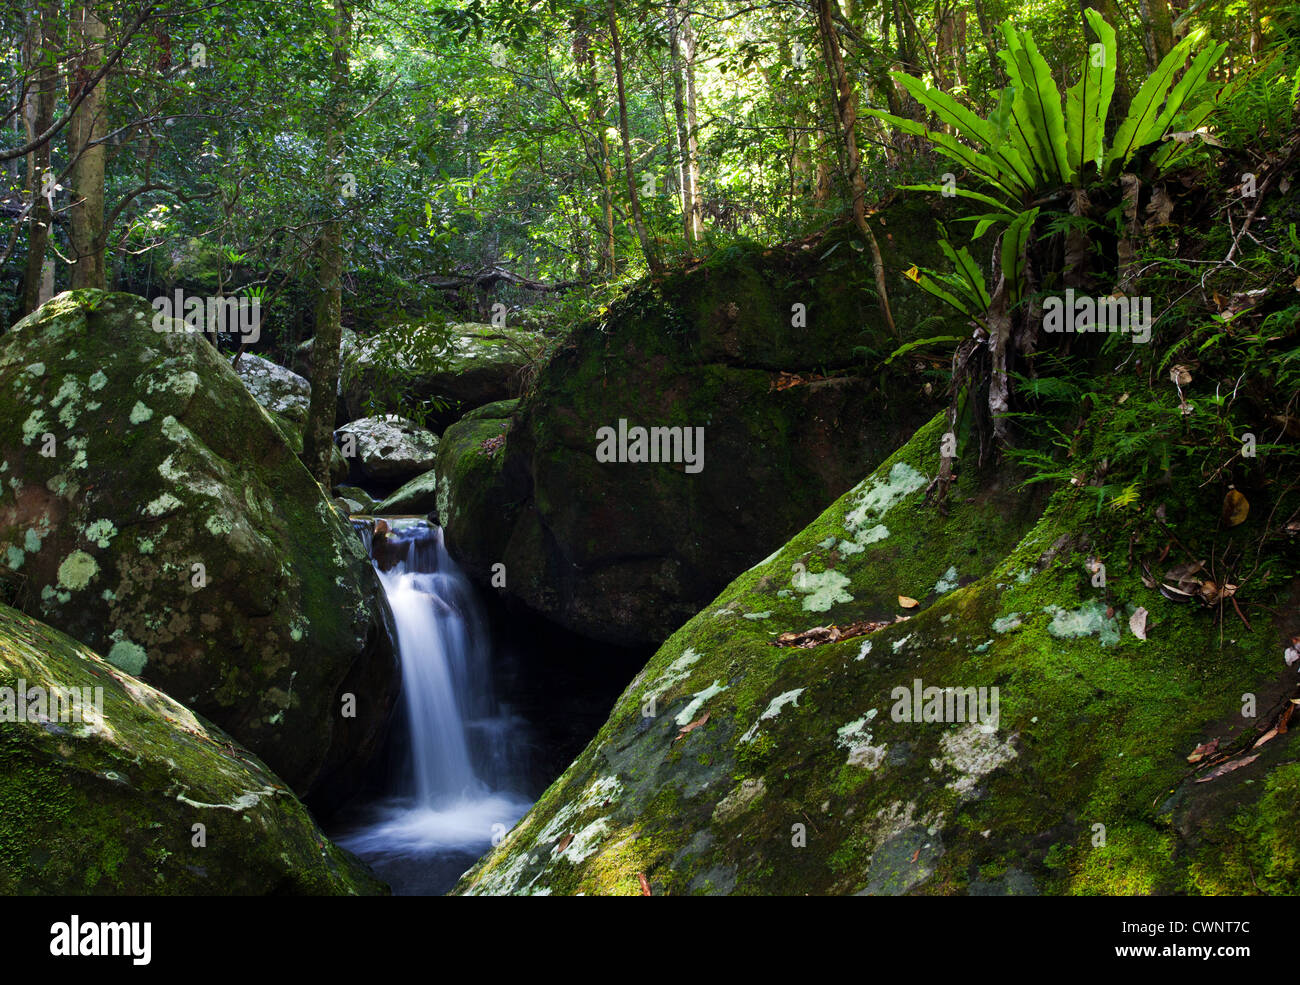 Petite cascade de la forêt tropicale, Minnamurra Rainforest, NSW, Australie Banque D'Images